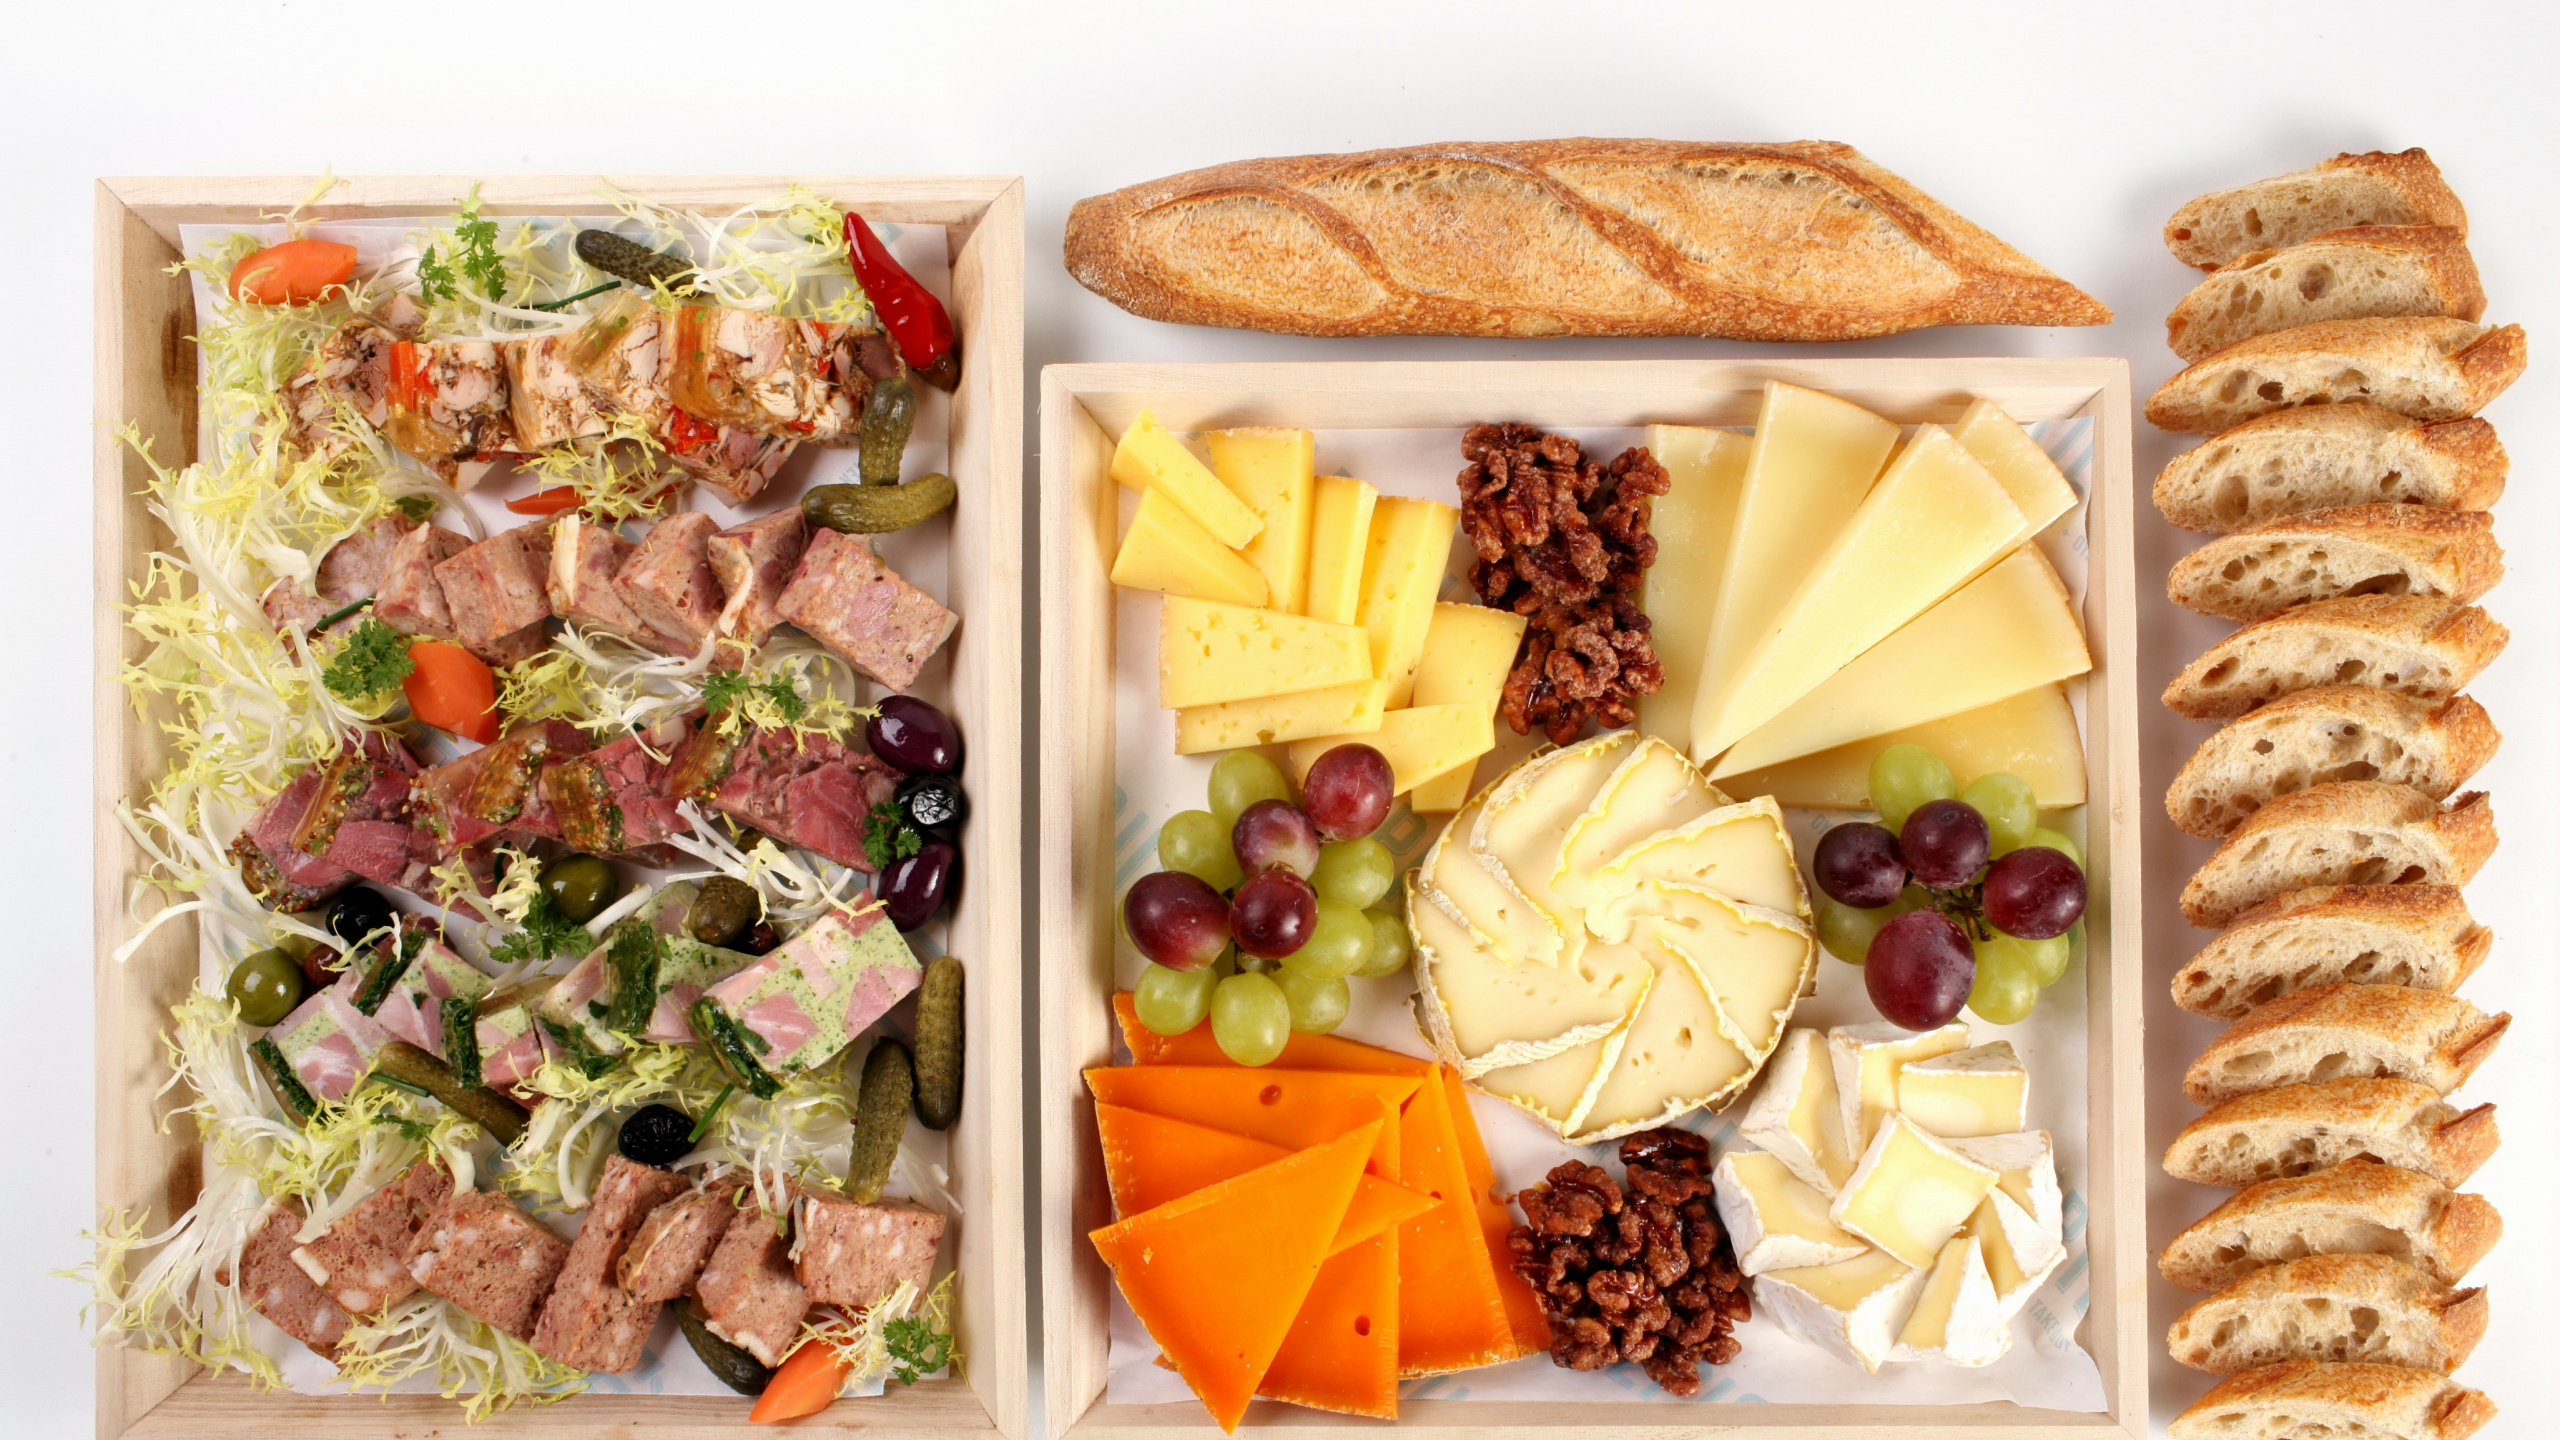 沙拉, 奶酪, 面包, 食品, 安慰食品 壁纸 2560x1440 允许